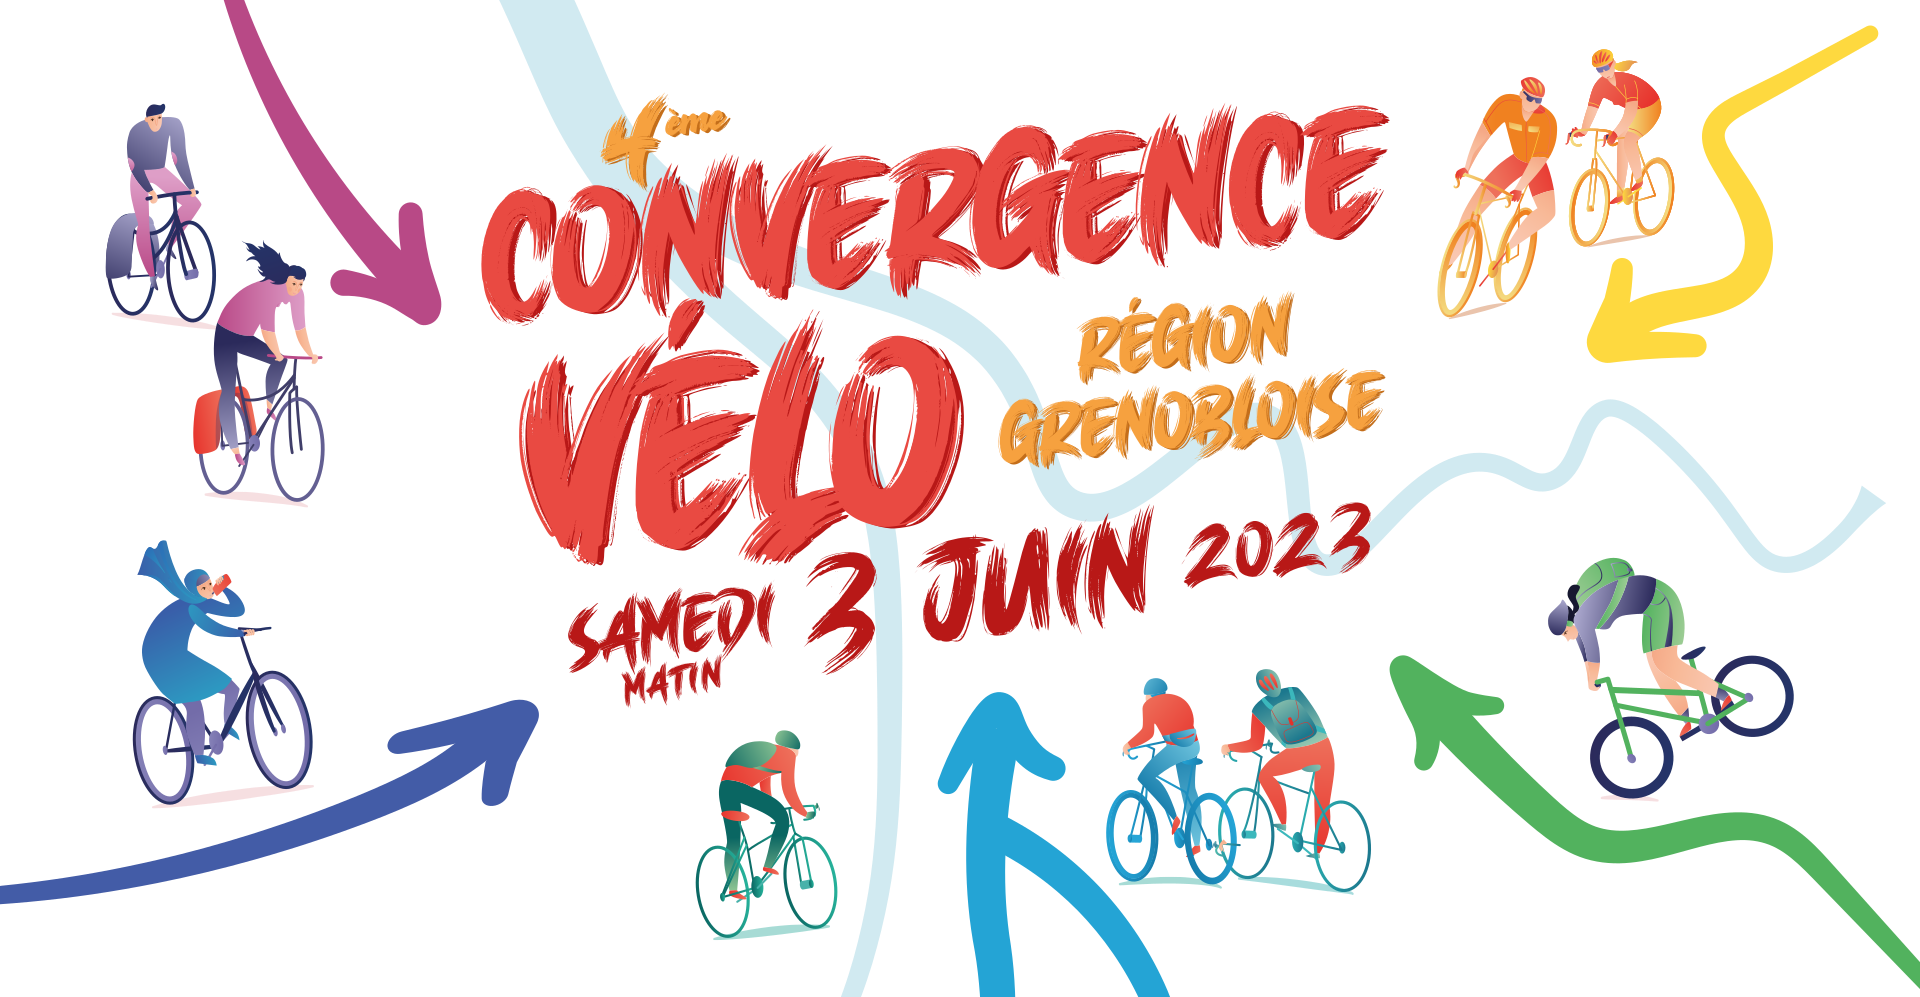 Partout à Biclou ! 4e convergence Vélo de la région grenobloise : Samedi 3 Juin 2023 Matin